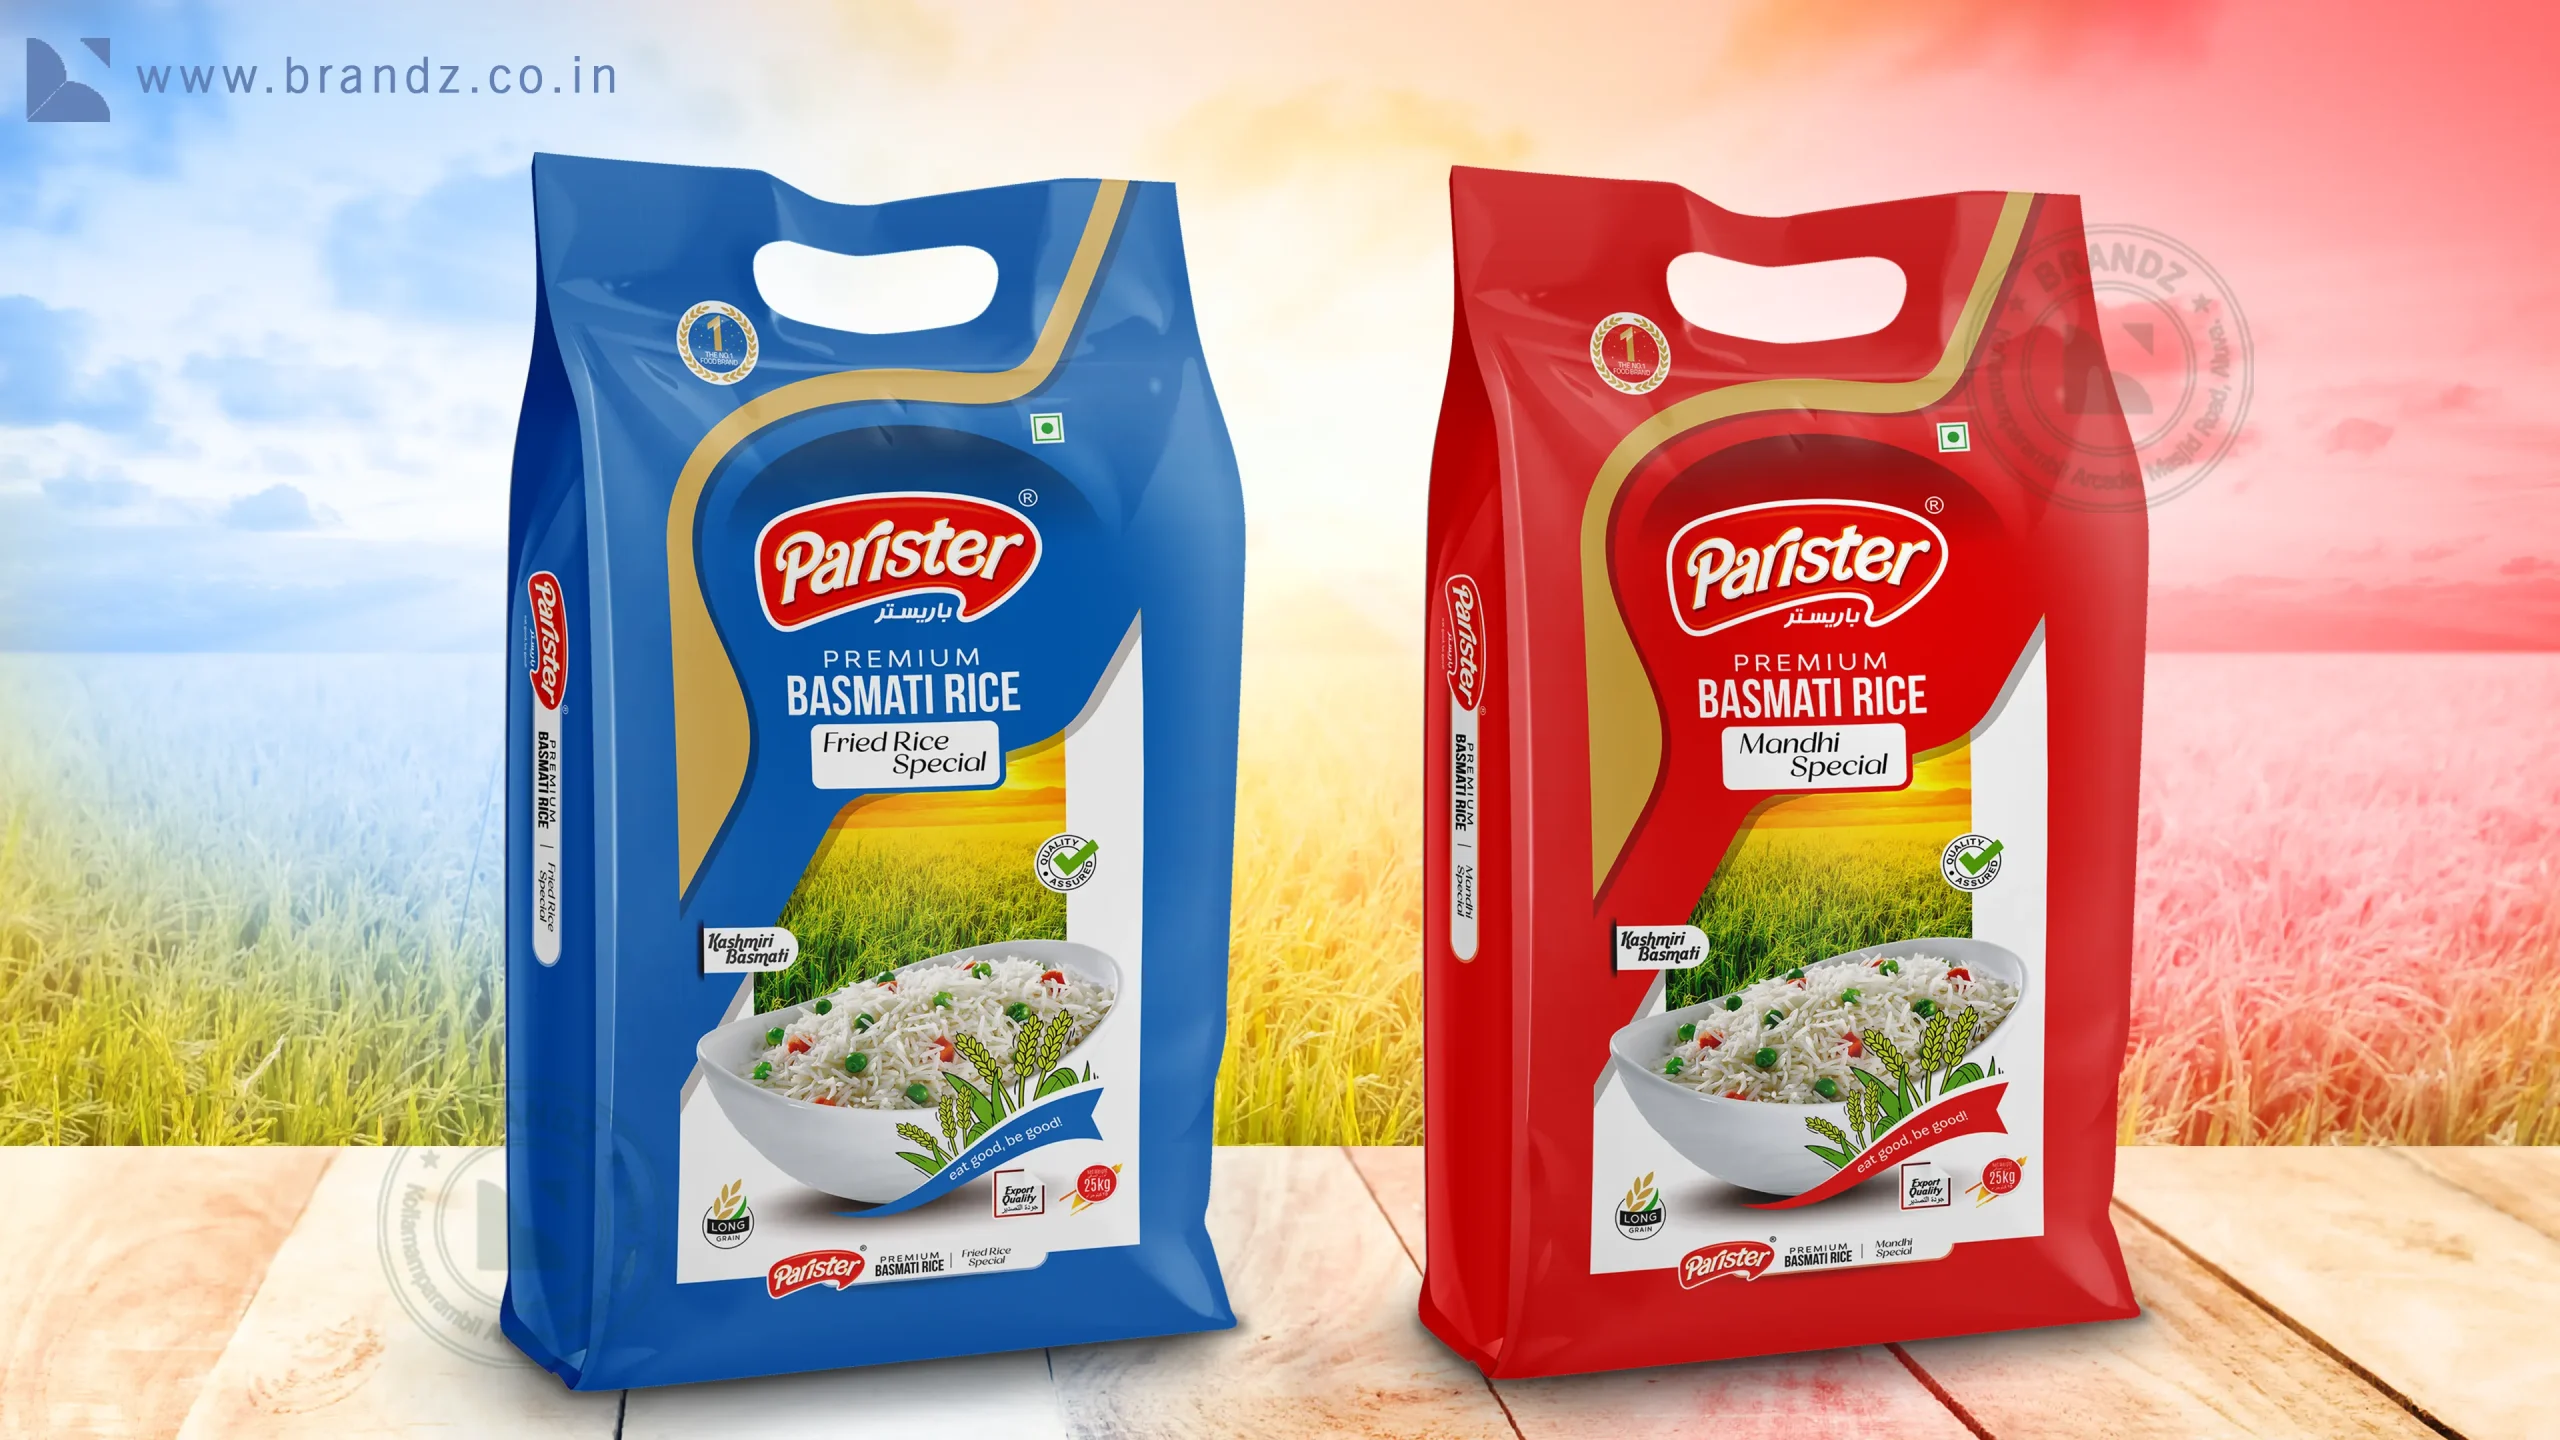 Parister Premium Basmati Rice Bag